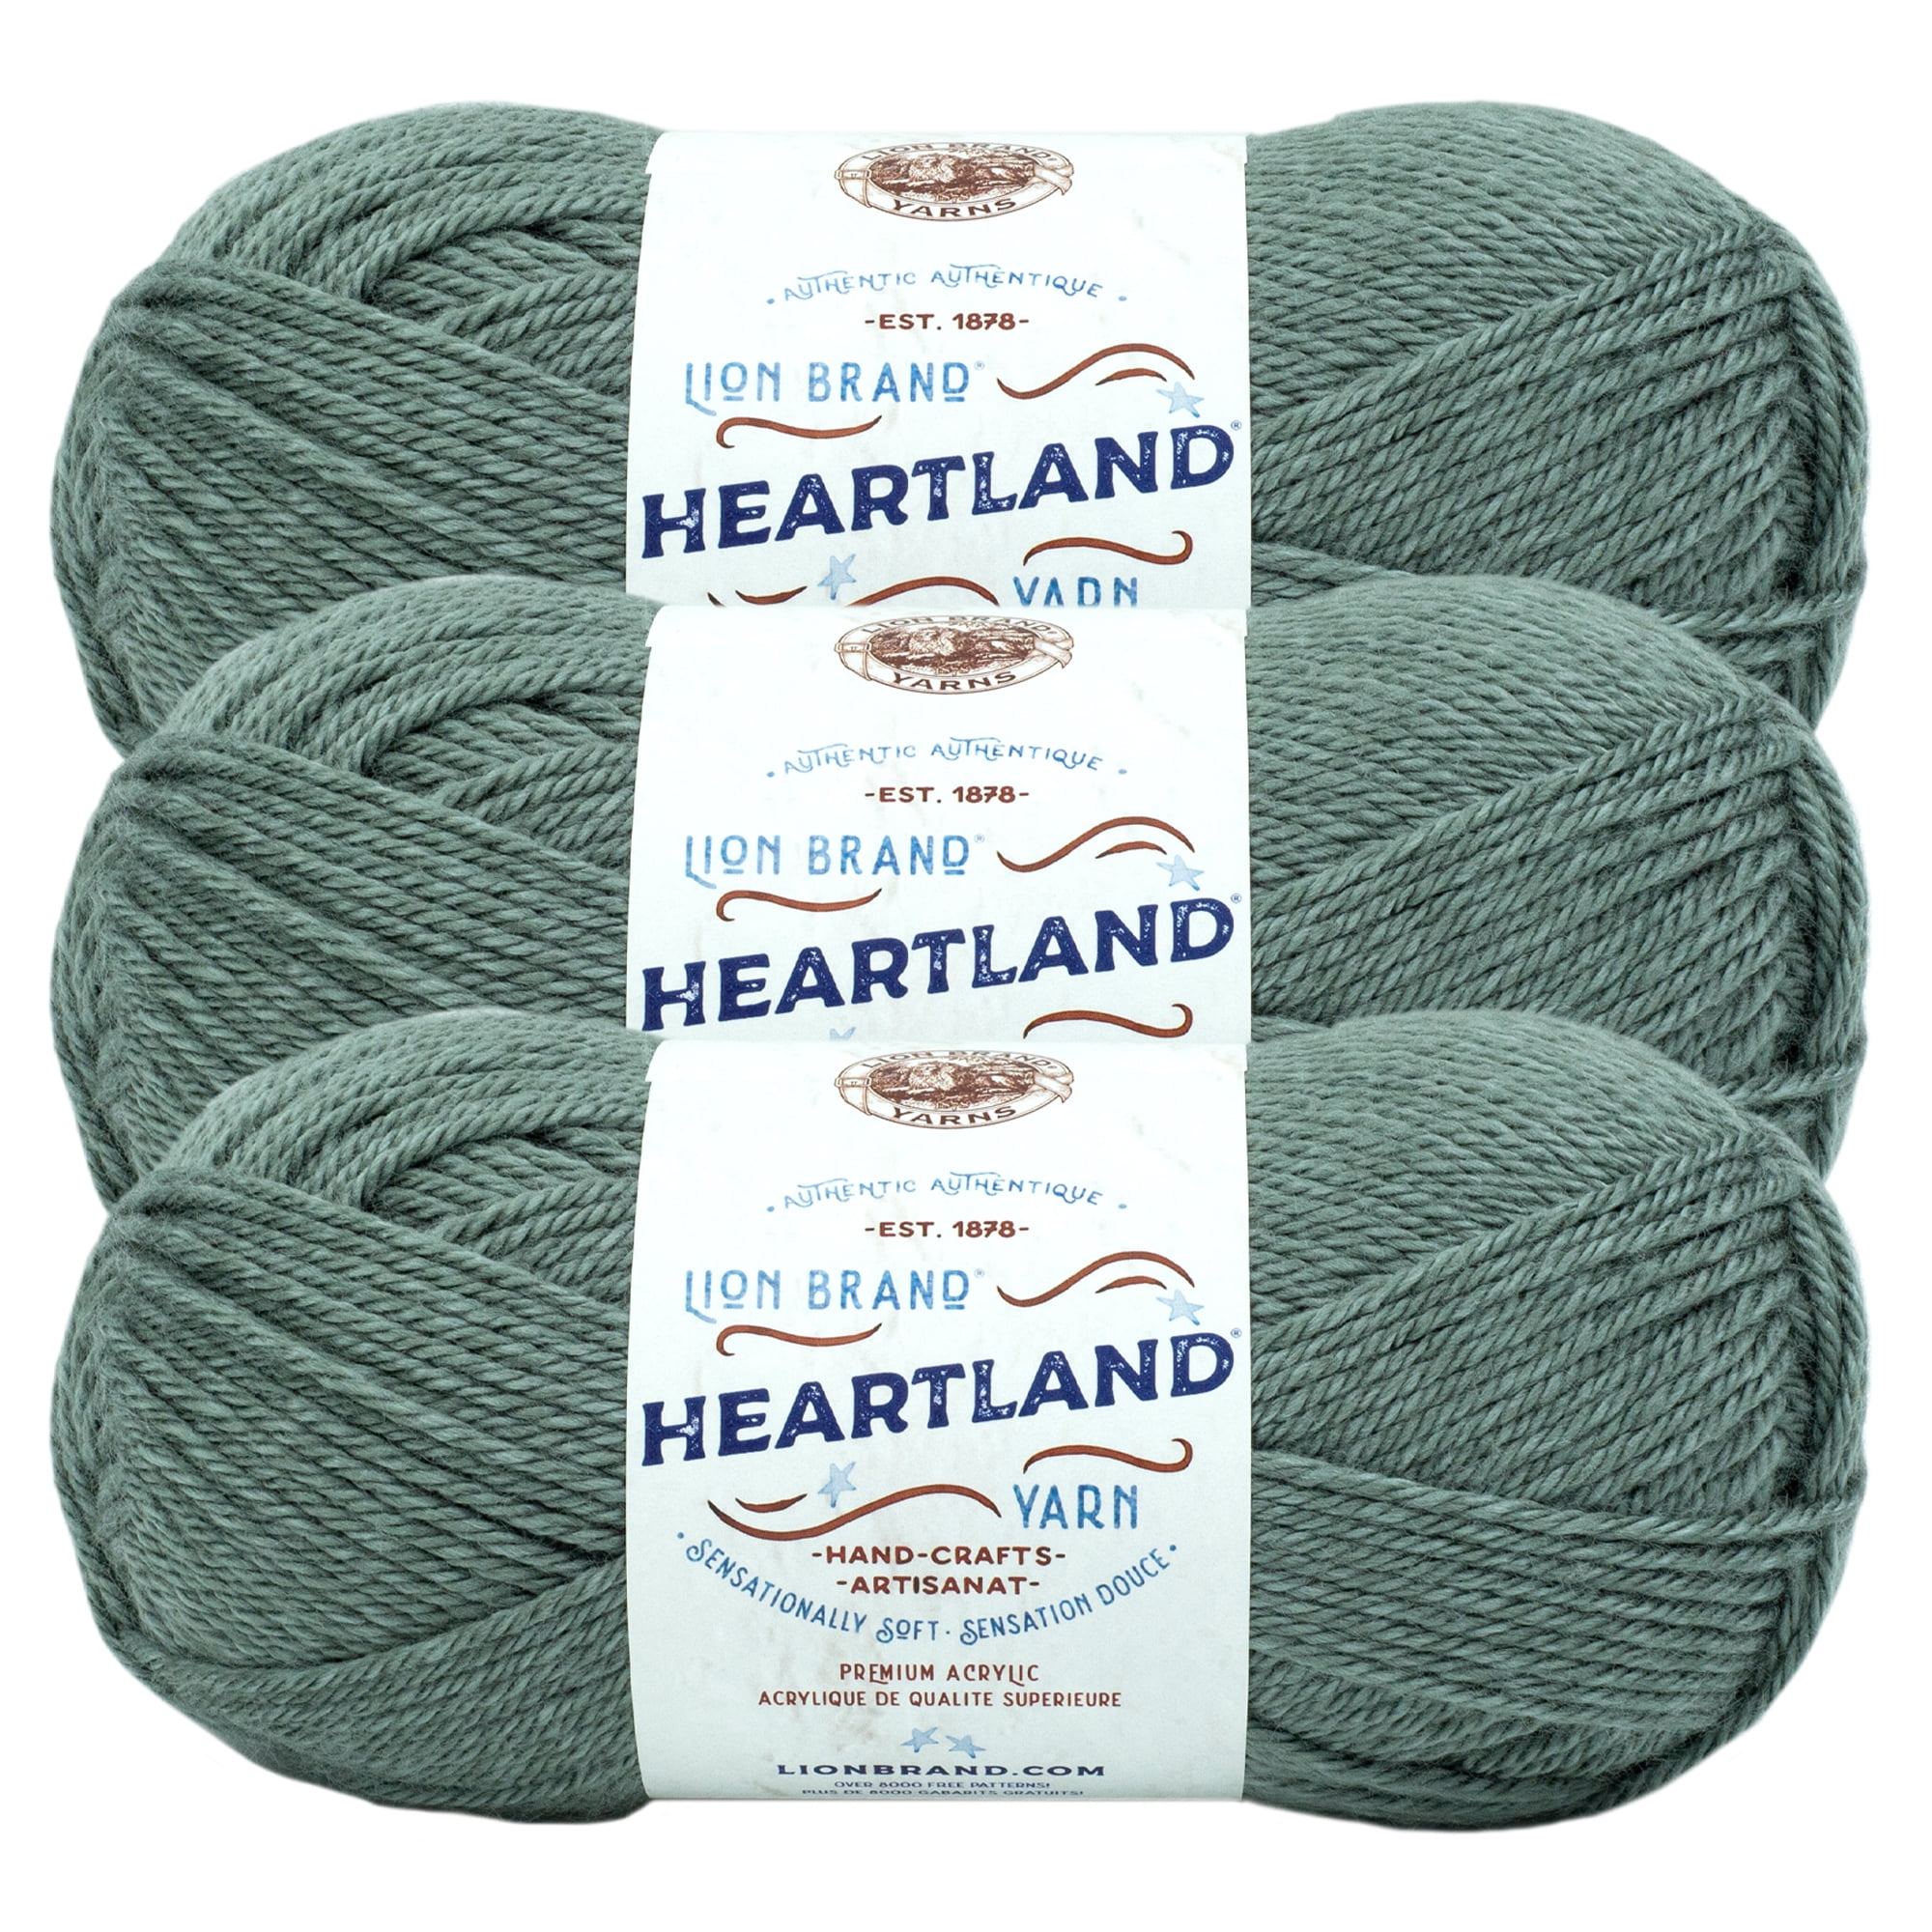 Lion Brand Yarn Heartland Olympic Basic Medium Acrylic Blue Yarn 3